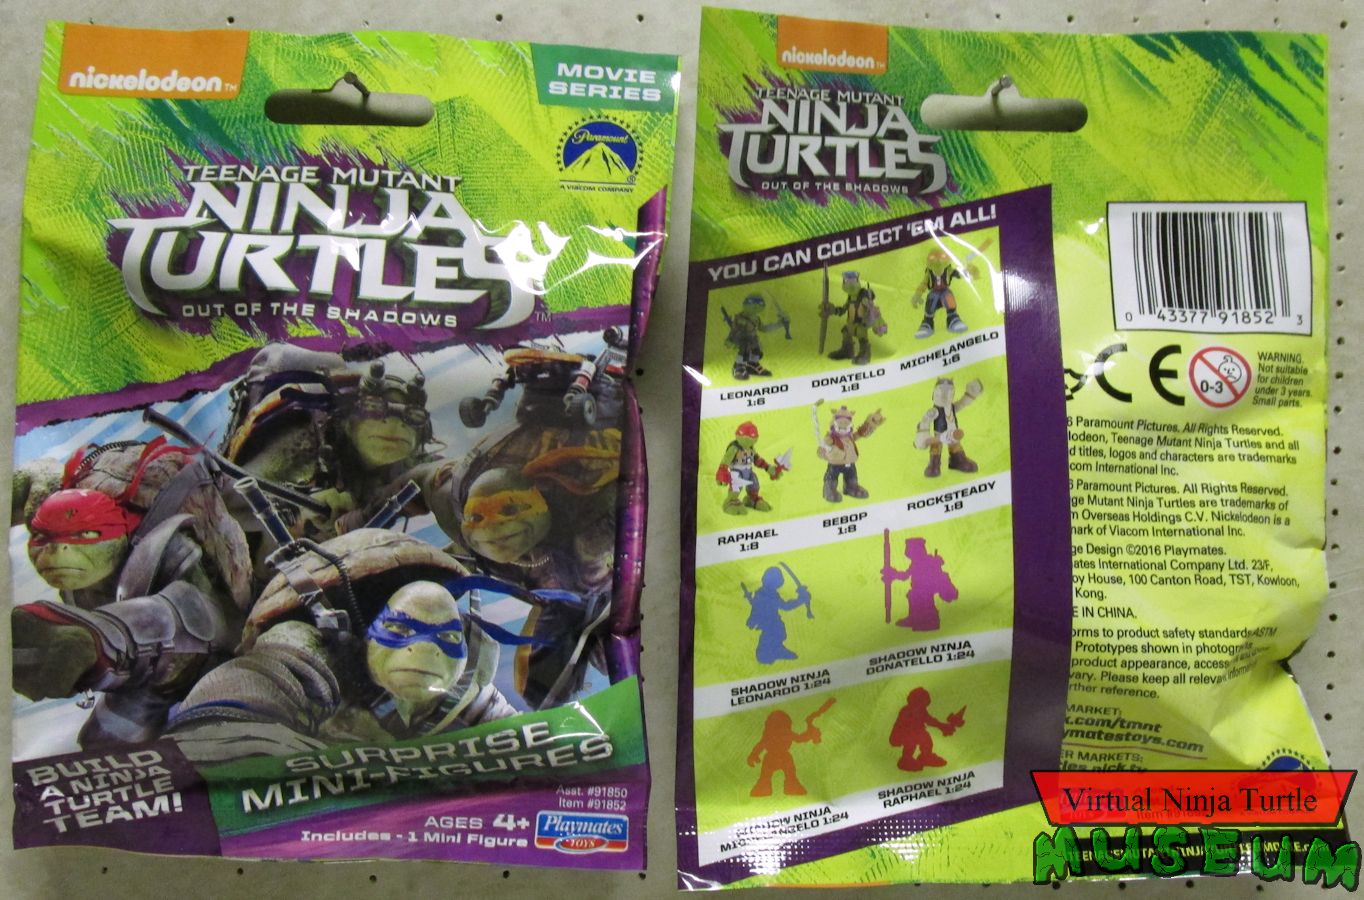 The New Teenage Mutant Ninja Turtles Movie Feels Surprisingly